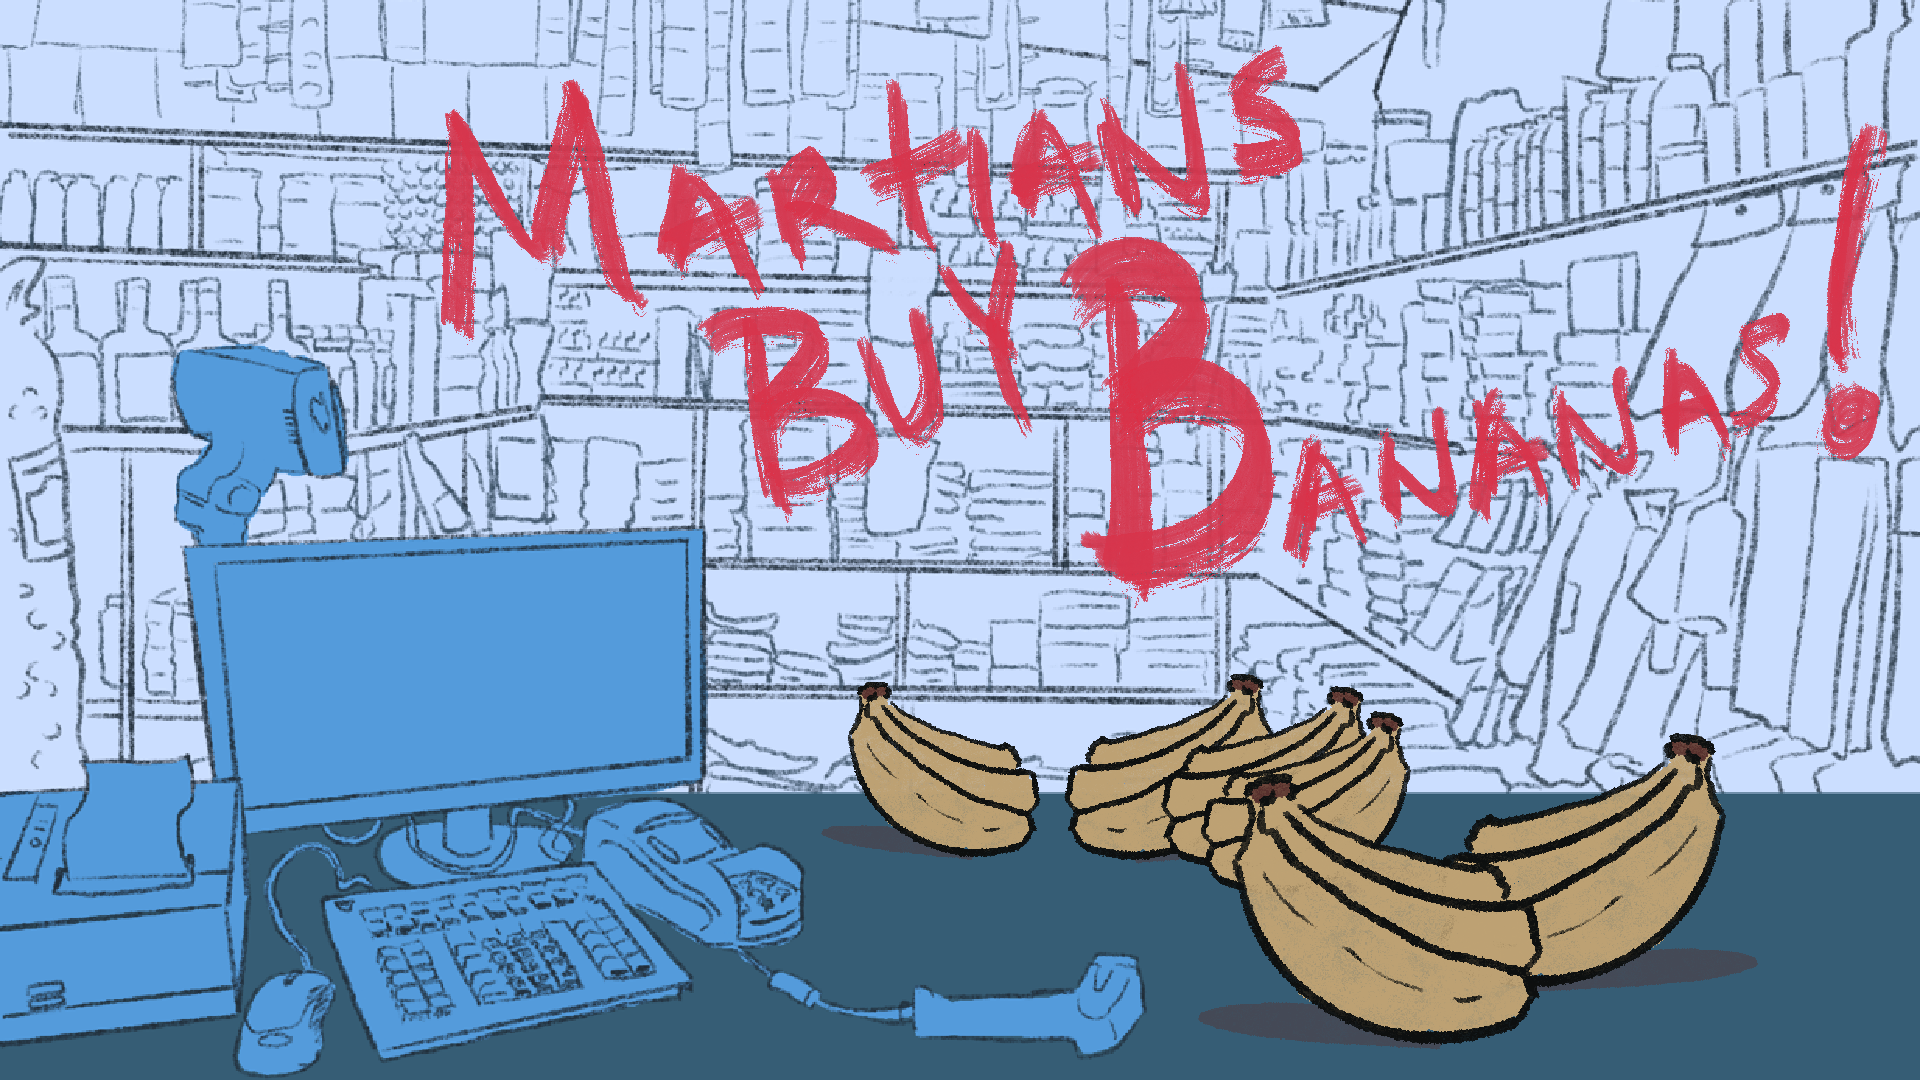 Martians Buy Bananas